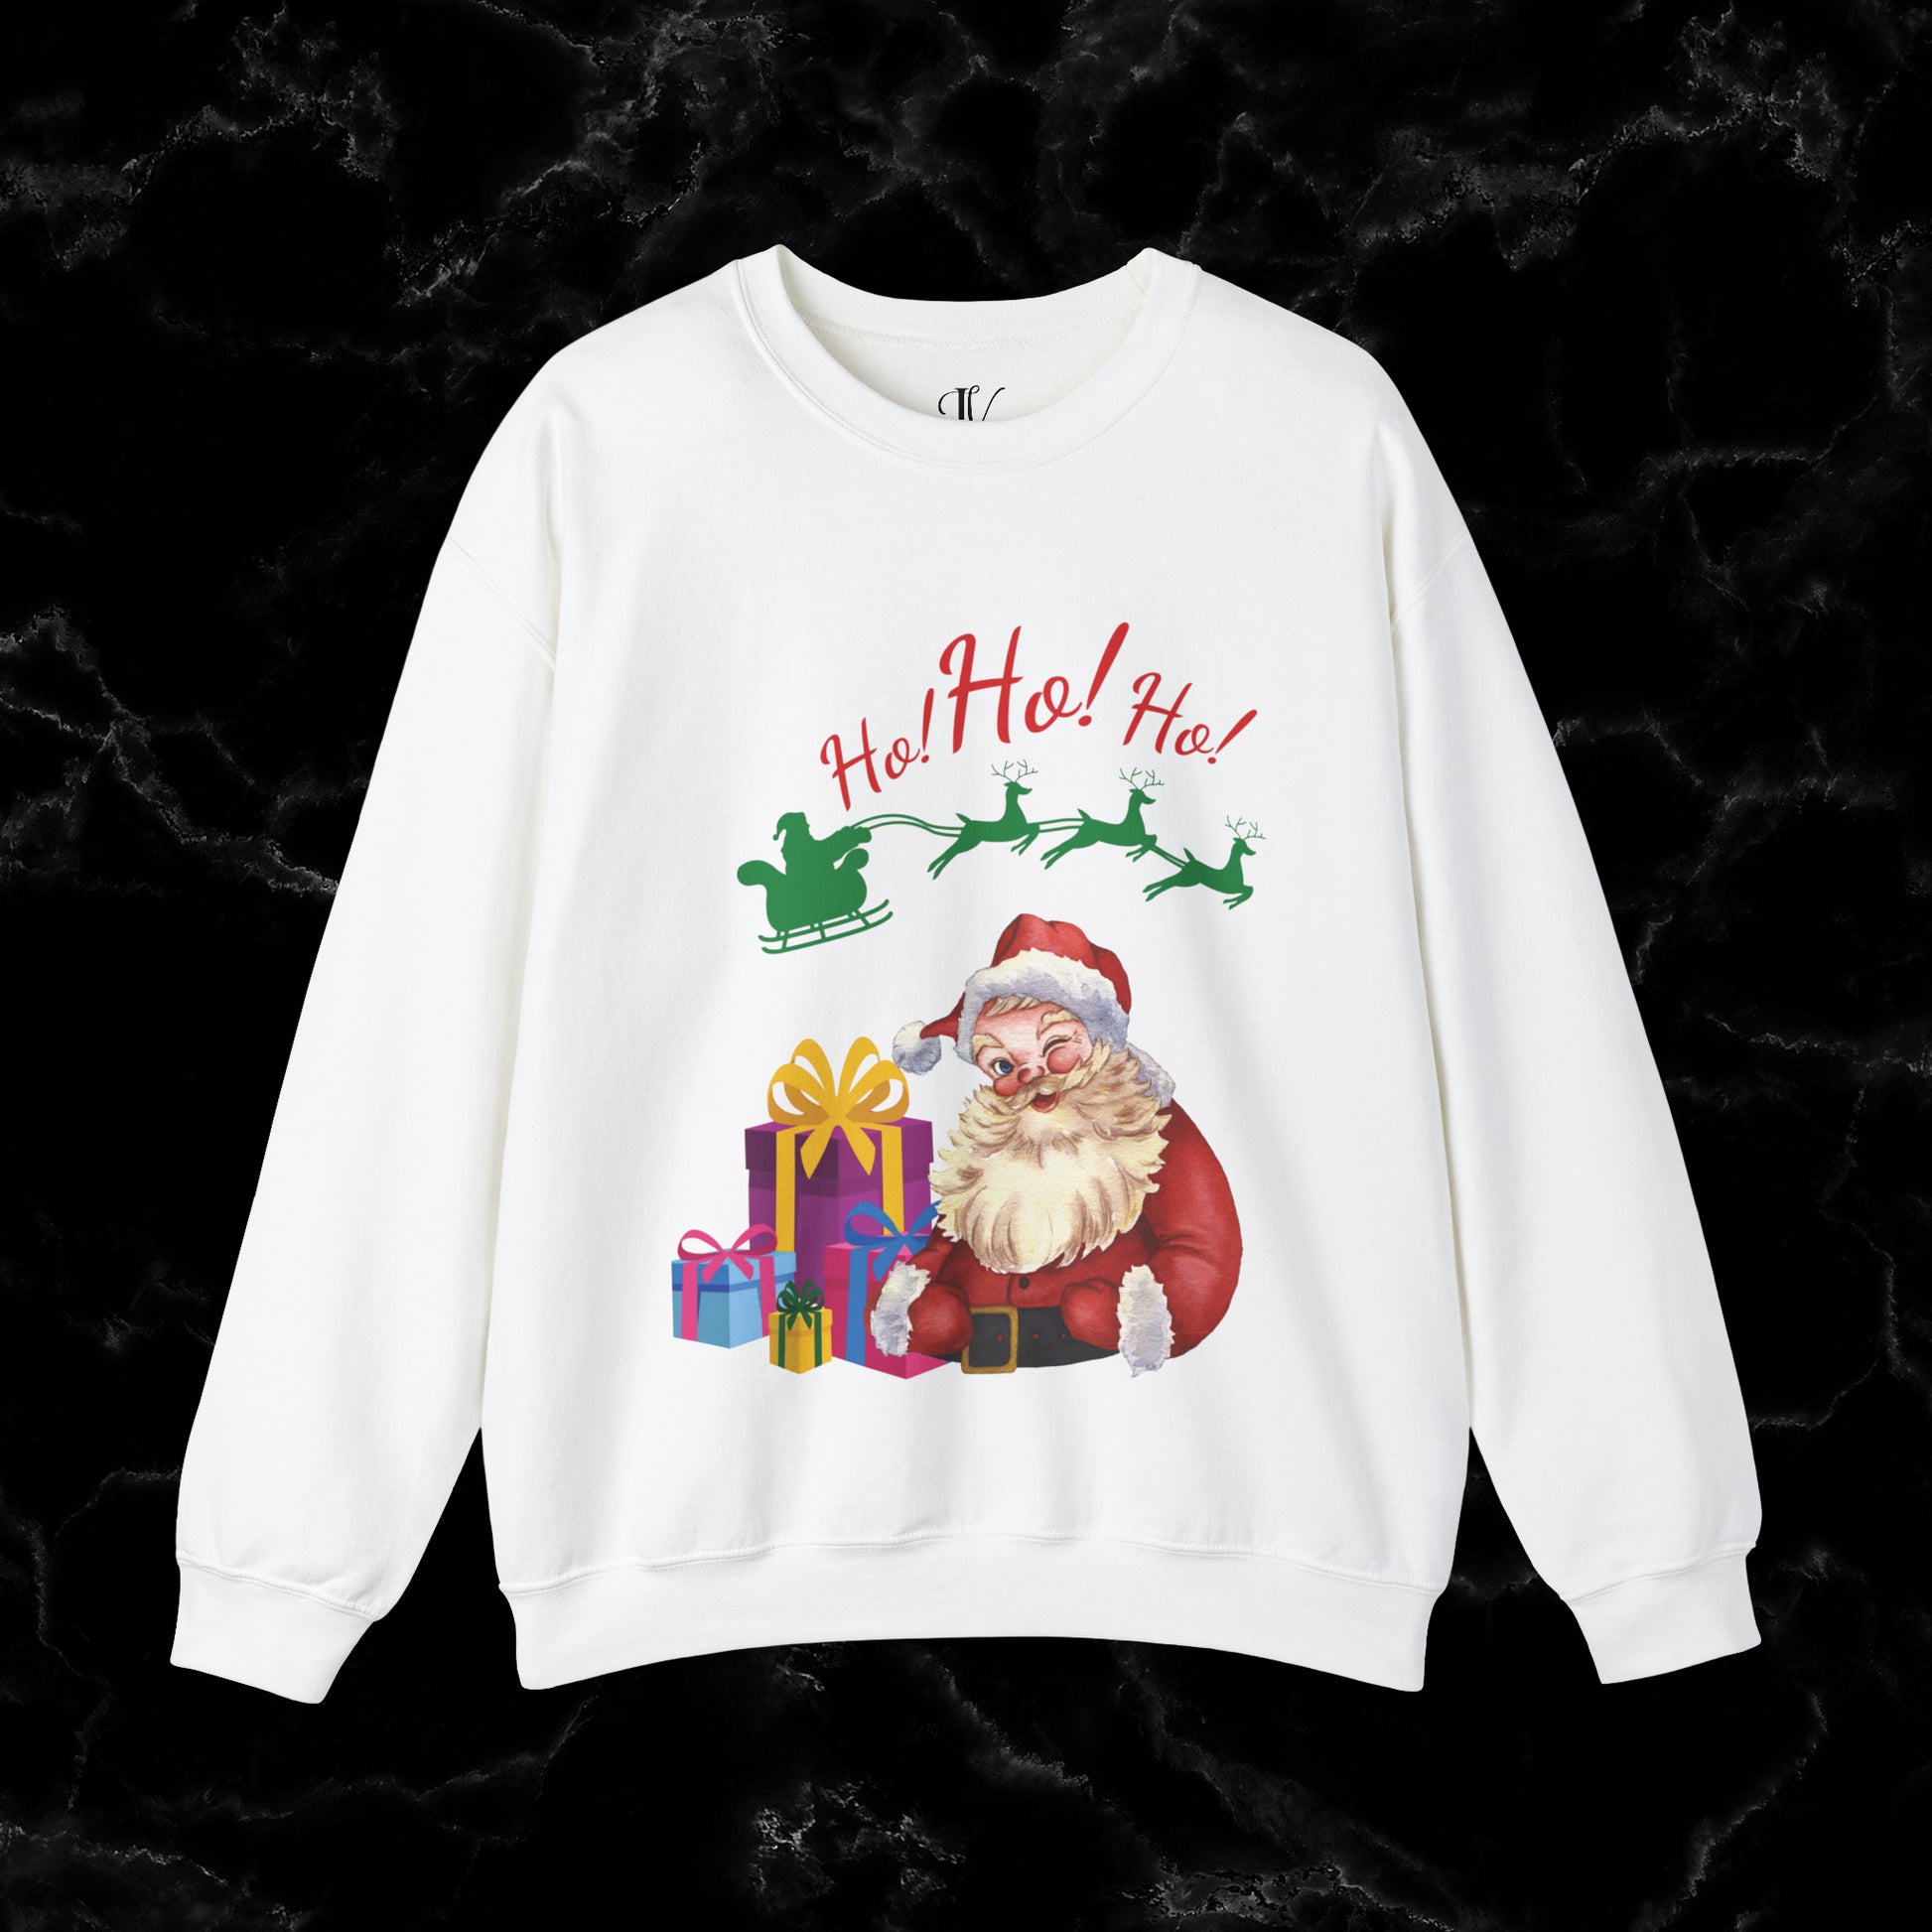 Retro Santa Sweatshirt - Vintage Christmas Fashion for Holiday Cheer Sweatshirt S White 